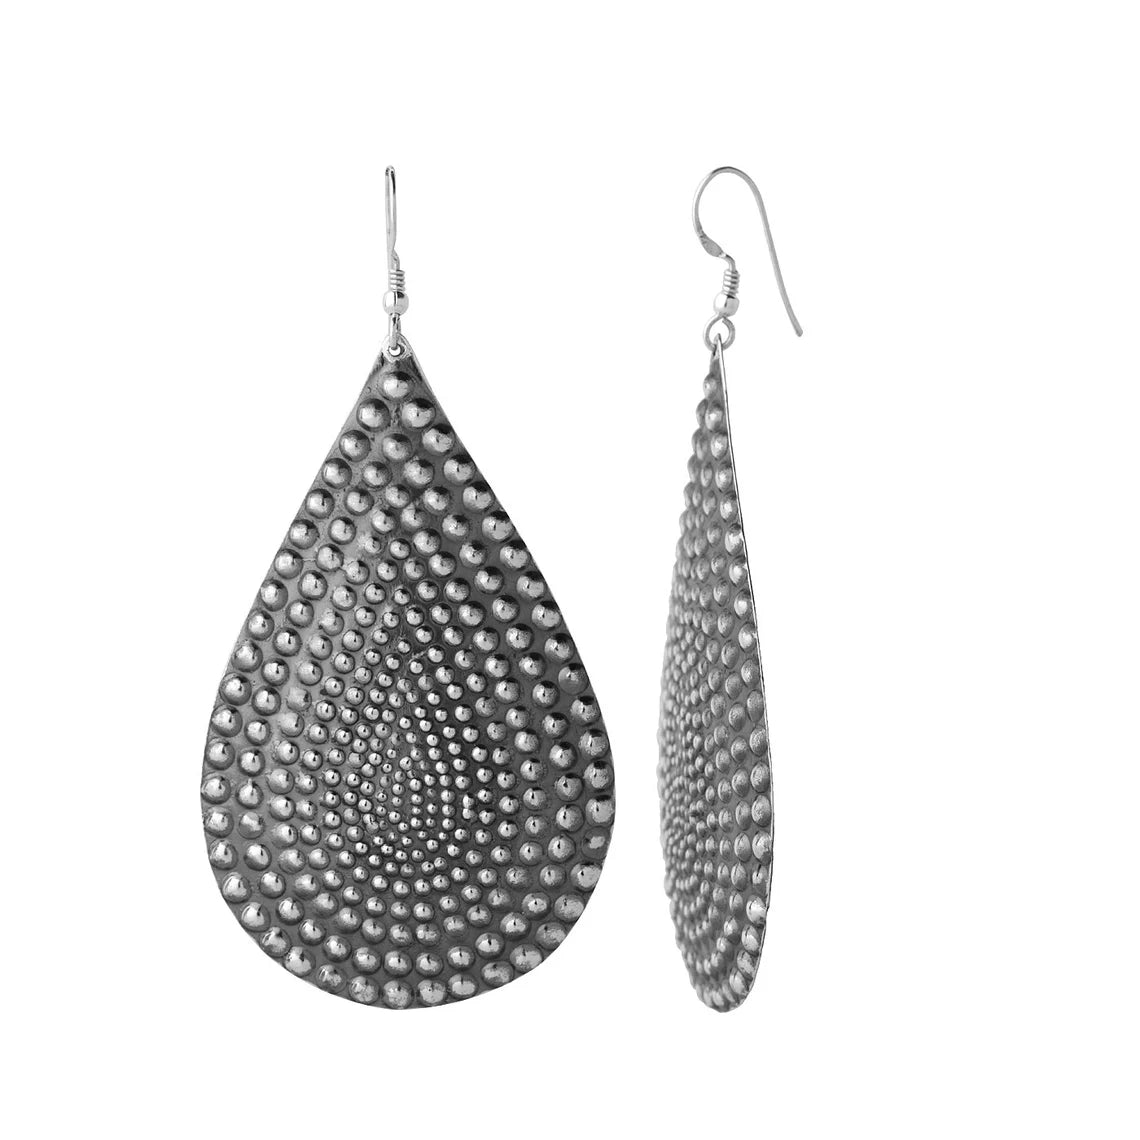 Sterling Silver Earrings - Dotted Earrings - Huge Earrings - Large Drops - Oxidized Earrings - Silver Earrings Pear Shape Dangle Earrings